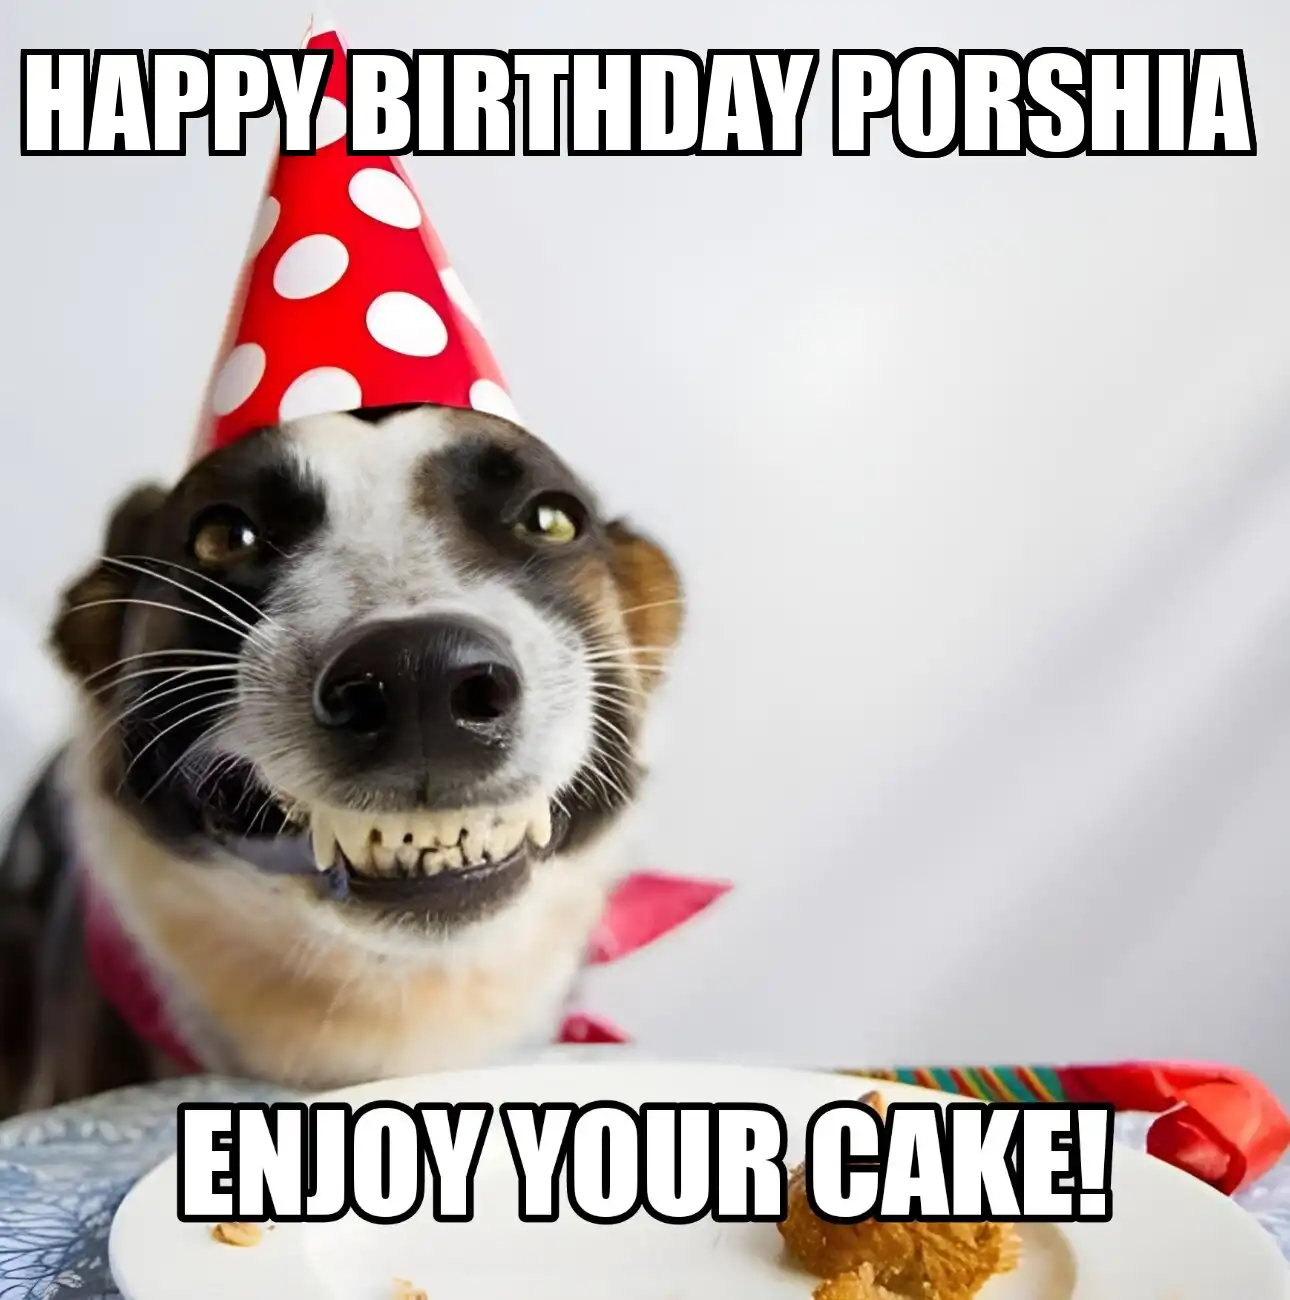 Happy Birthday Porshia Enjoy Your Cake Dog Meme